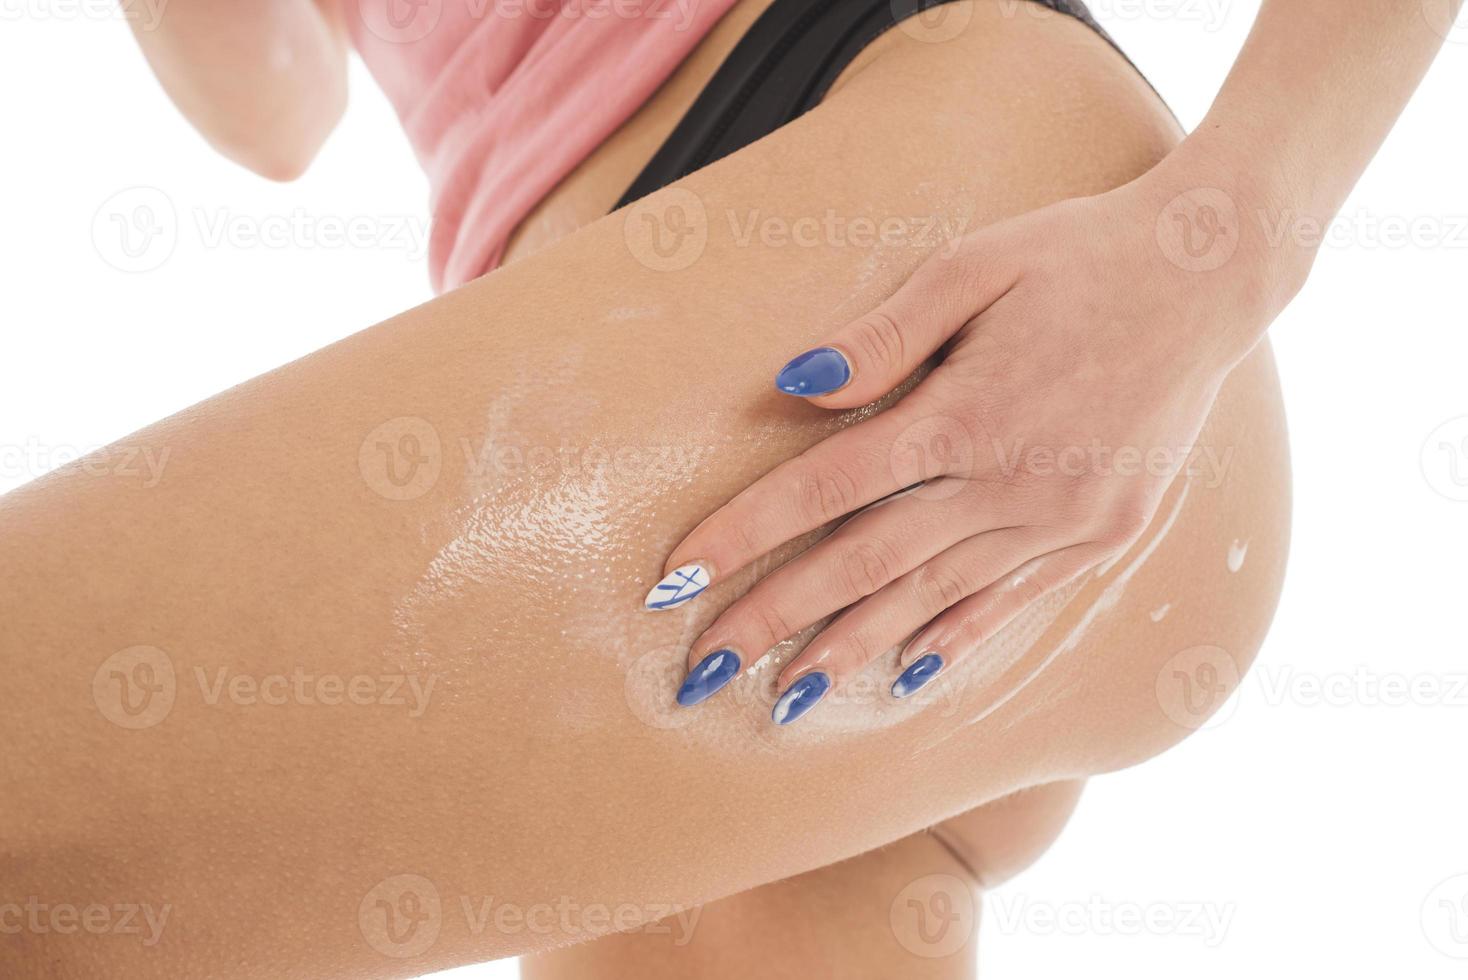 la femme applique une lotion pour le corps sur ses jambes. isolé sur fond blanc photo